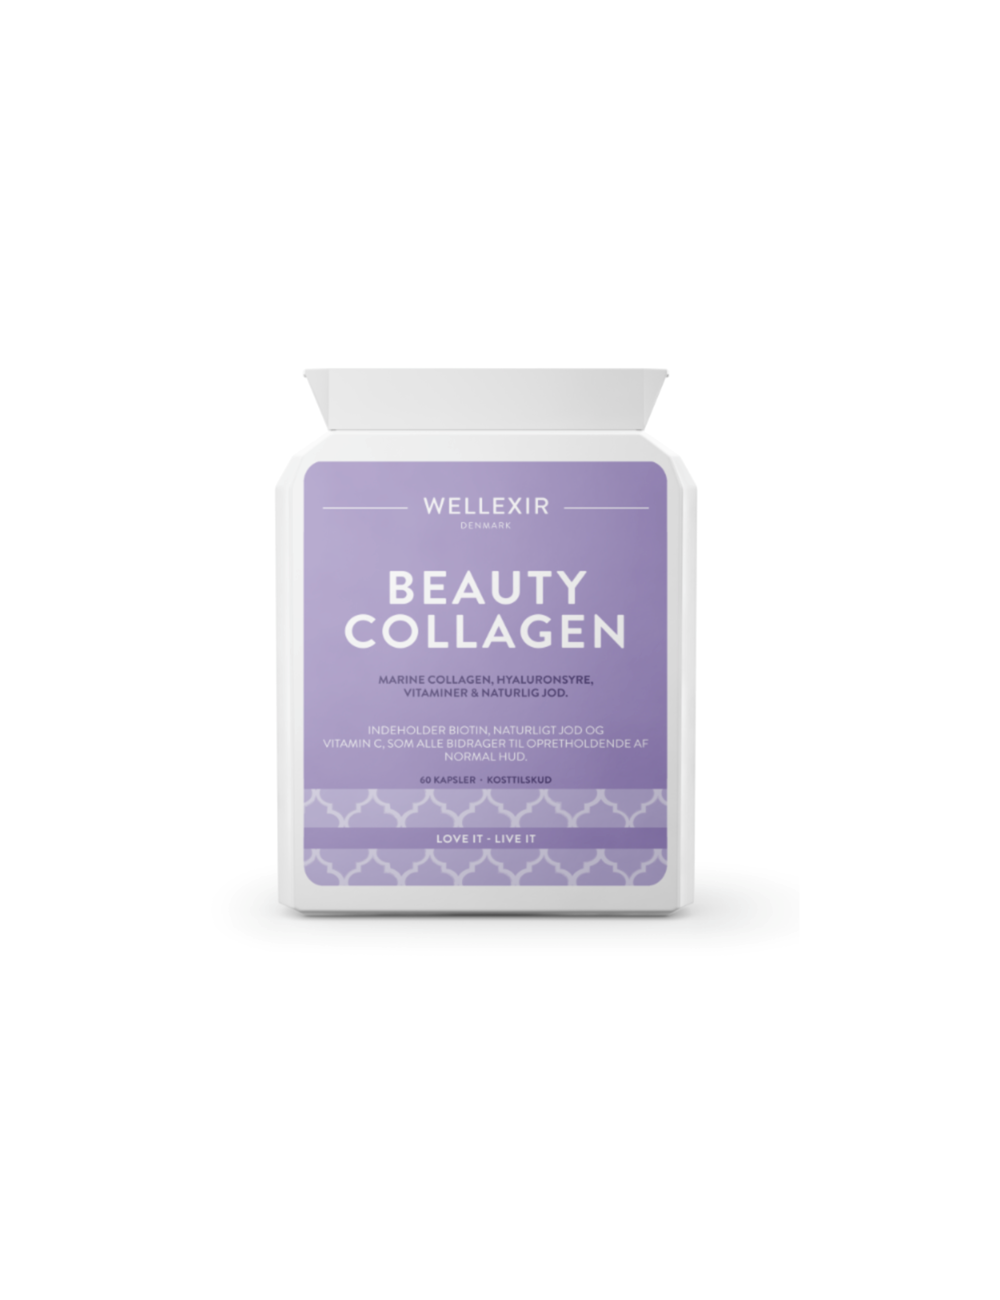 Nutricosmética - Suplementos al mejor precio: WELLEXIR Beauty Collagen- Suplemento para piel y pelo de WELLEXIR en Skin Thinks - 